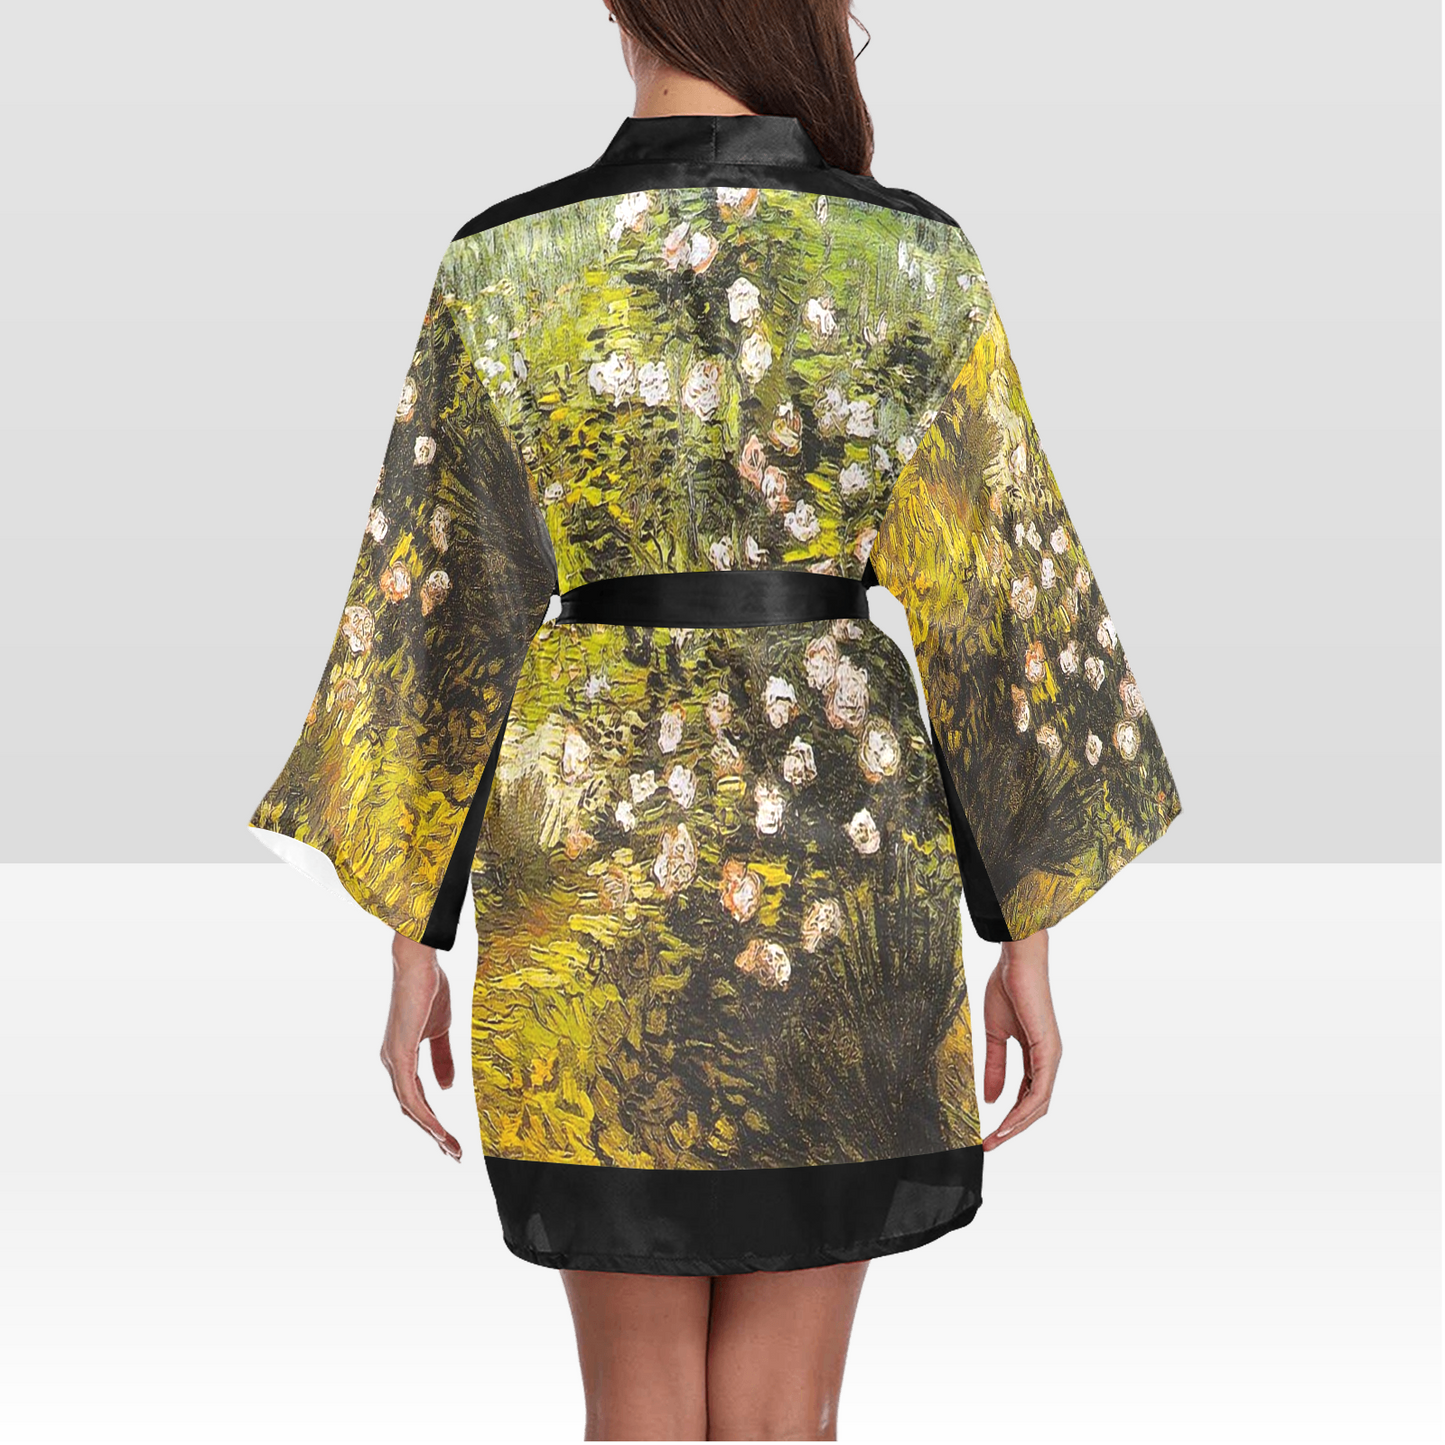 Vintage Floral Kimono Robe, Black or White Trim, Sizes XS to 2XL, Design 05